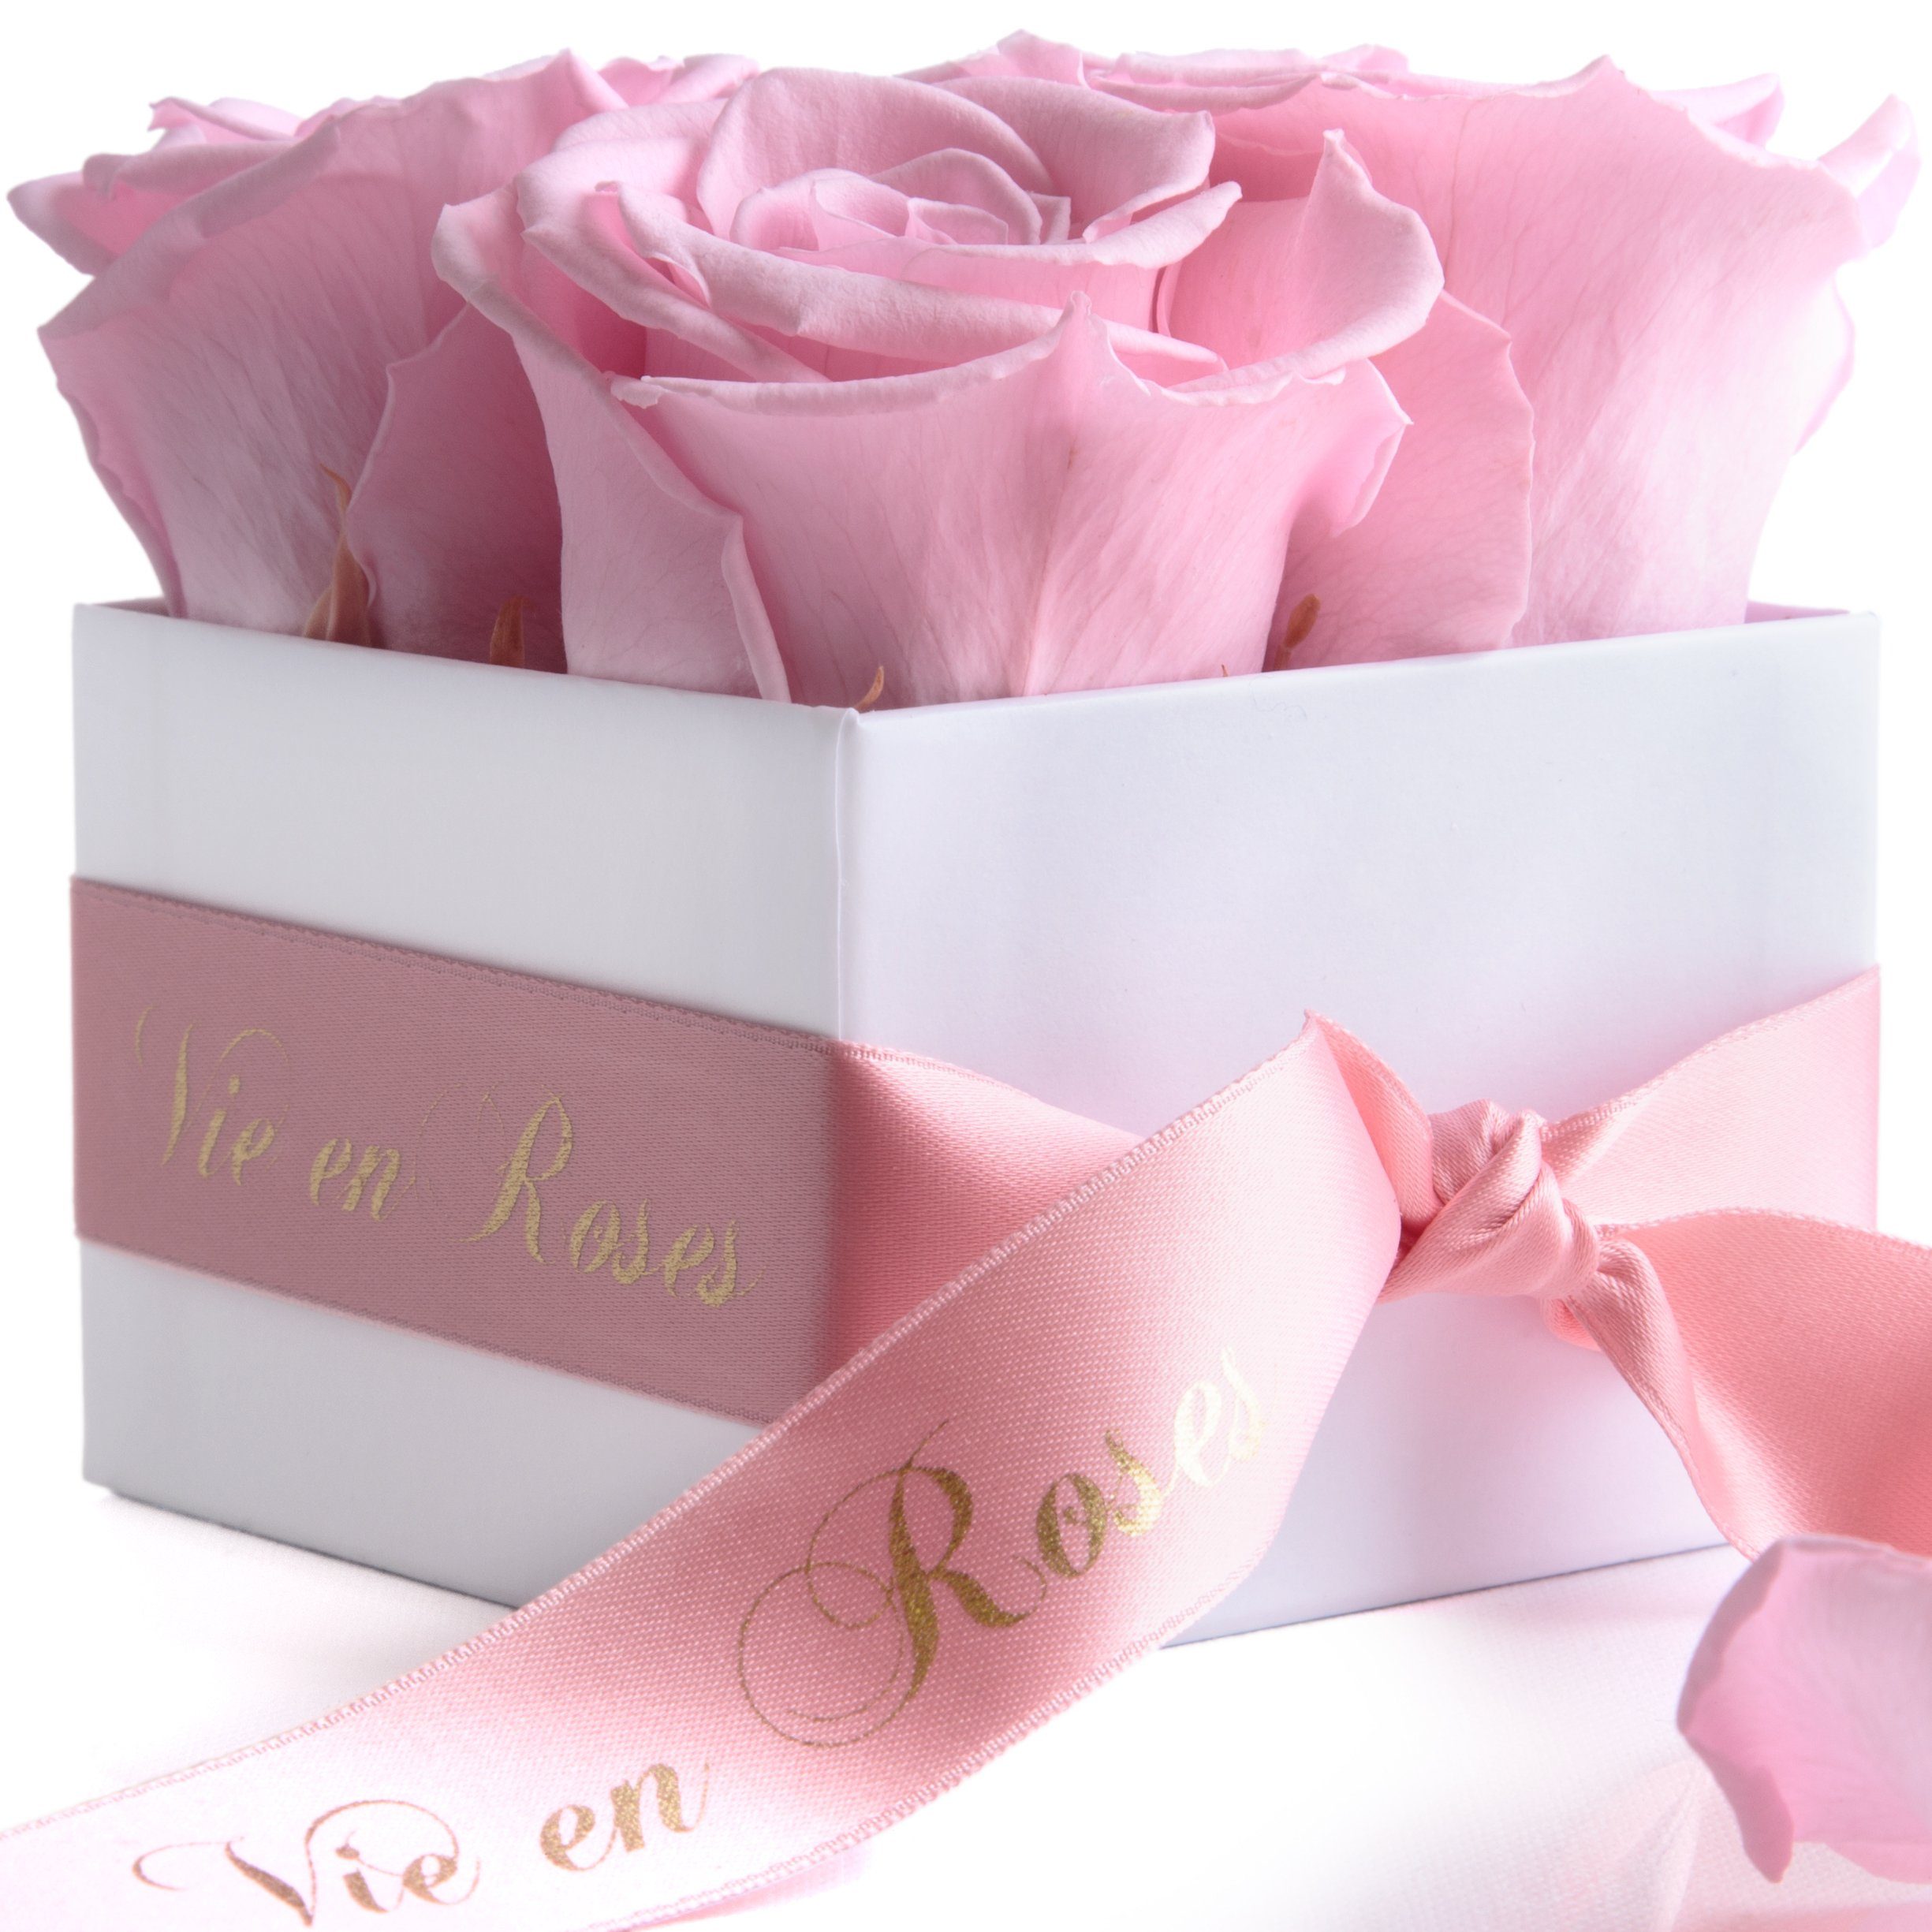 Kunstblume Rosenbox weiß Infinity Rosen Poesie Deko Geschenk für Damen Rose, ROSEMARIE SCHULZ Heidelberg, Höhe 8.5 cm, für Frauen zum Valentinstag rosa